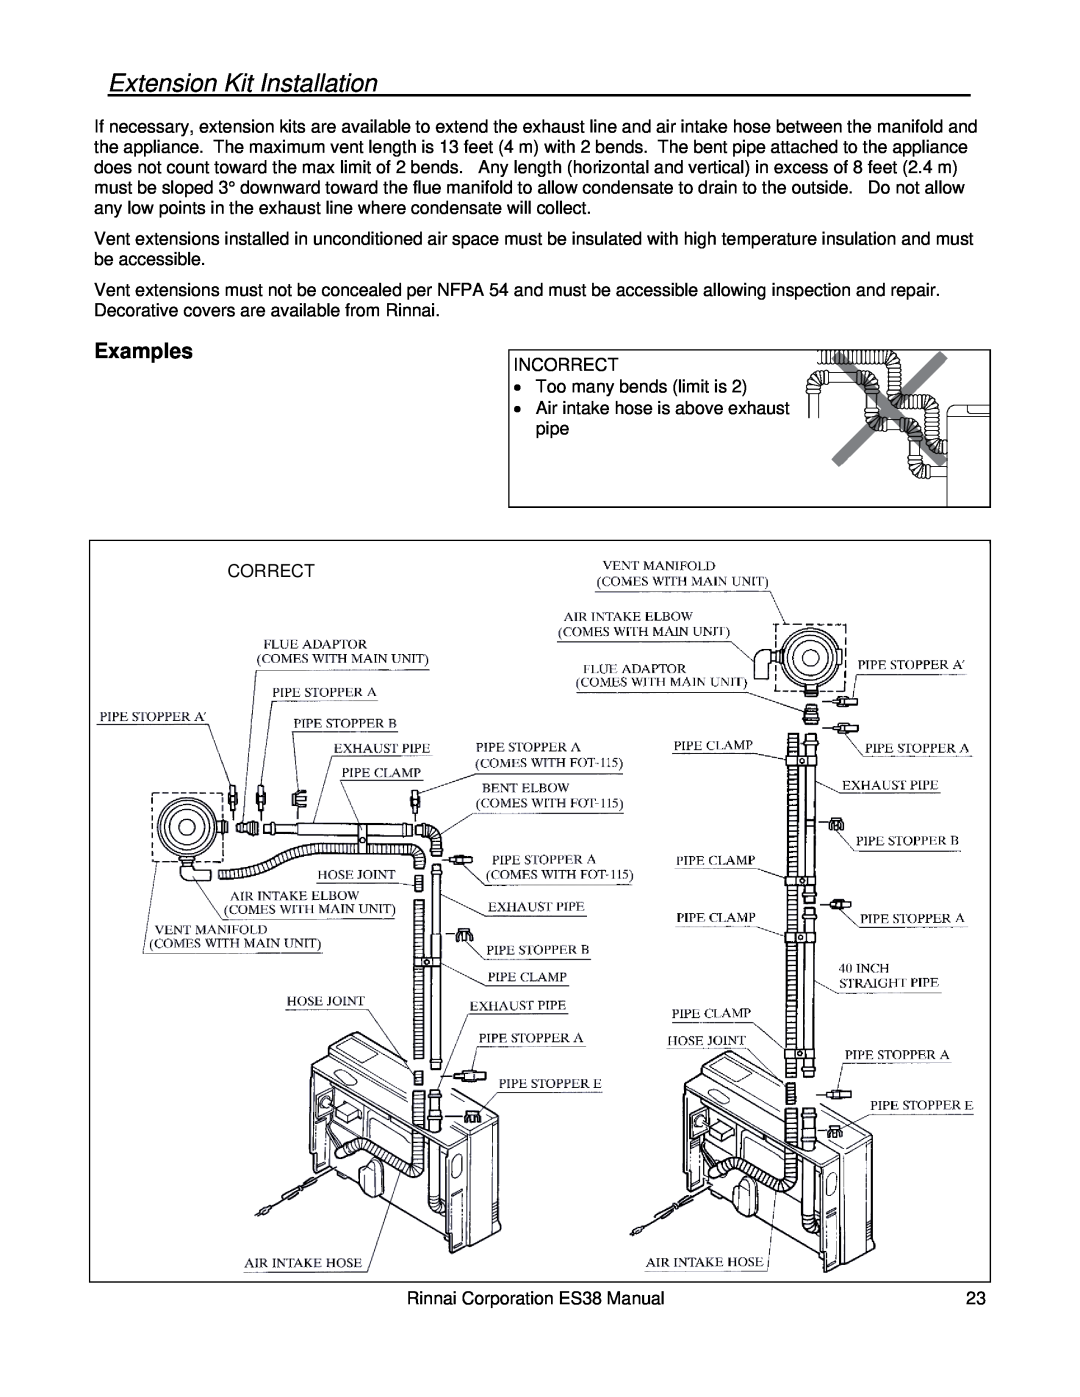 Rinnai ES38 installation manual Extension Kit Installation, Examples 